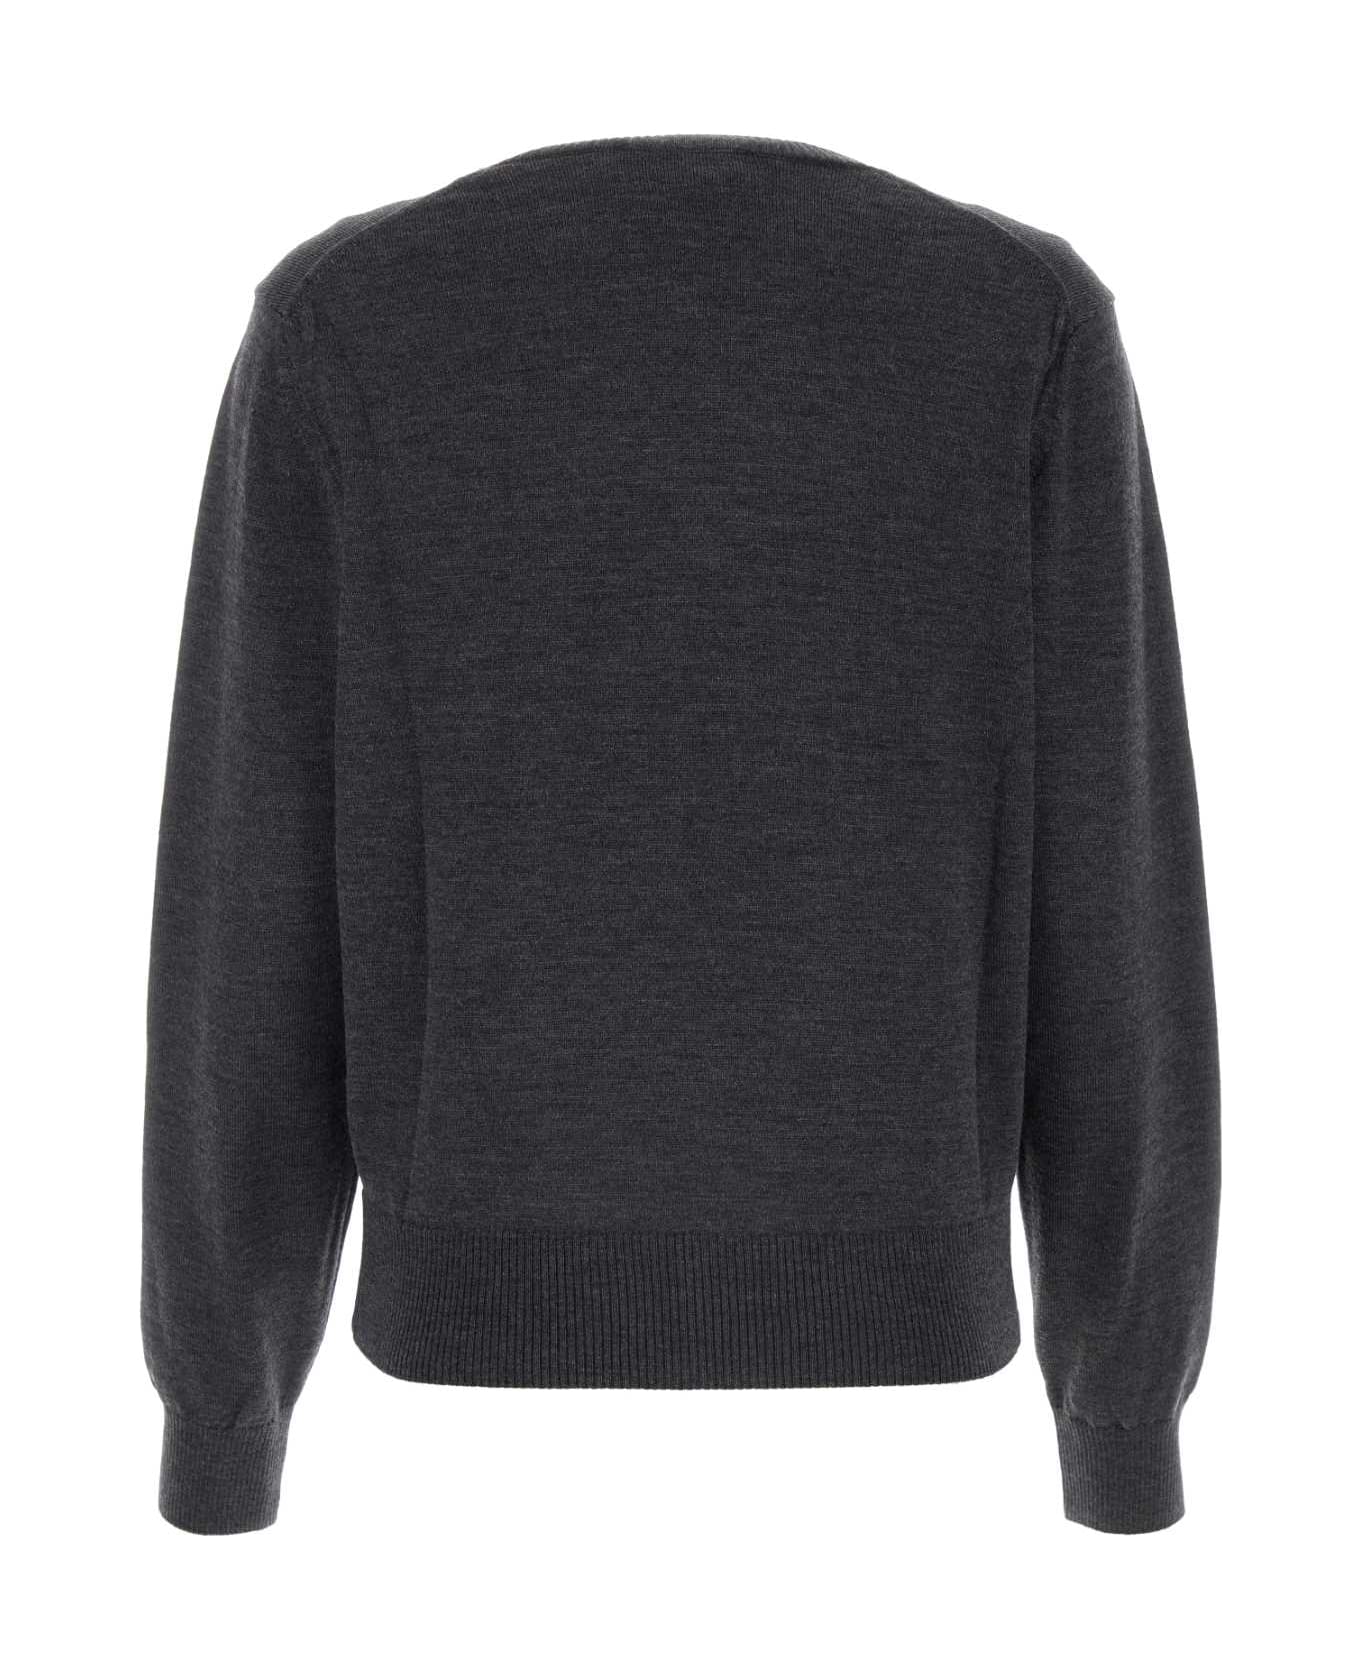 Ami Alexandre Mattiussi Dark Grey Wool Sweater - HEATHERGREY